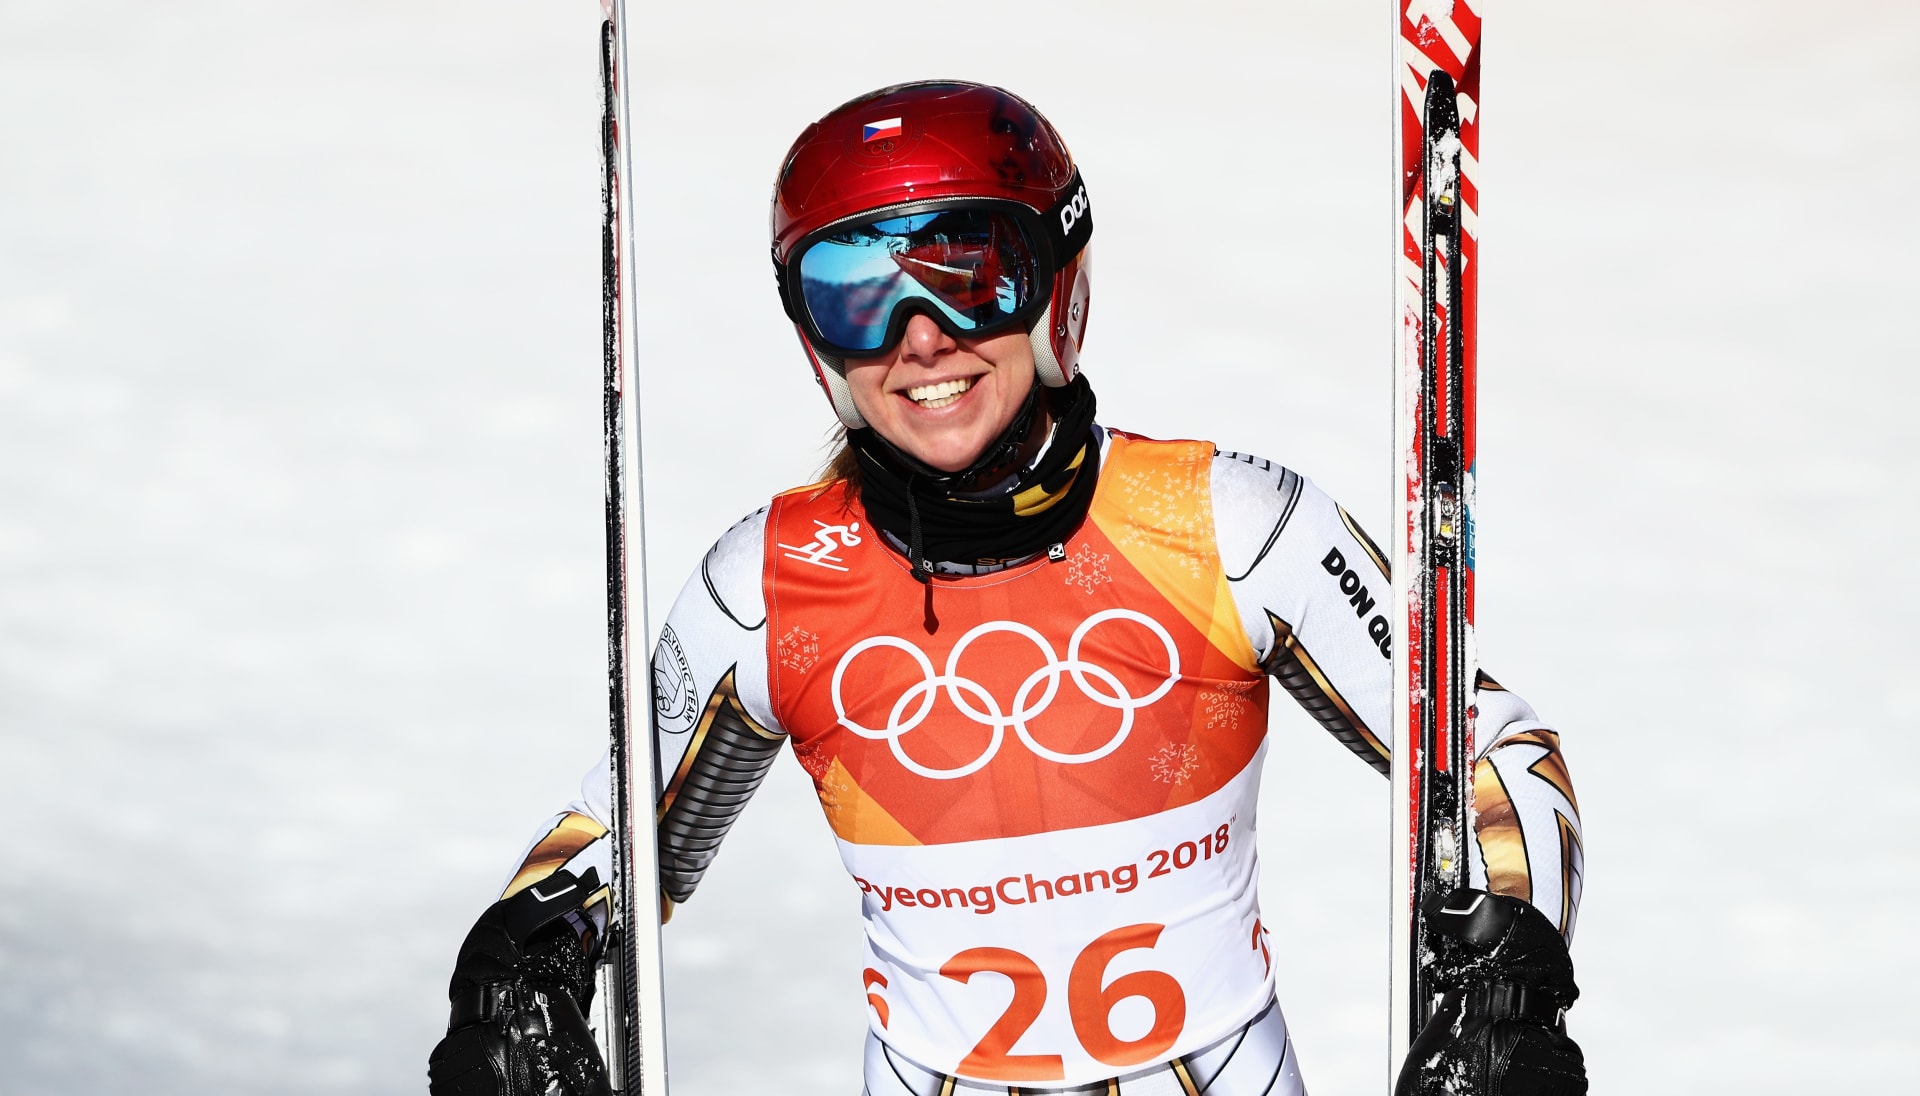 Takto spokojeně se Ester Ledecká tvářila ve chvíli, kdy se přestala divit, že vyhrála olympijský závod super-G v Pchjongčchangu. Může medaili získat i v Pekingu? Zde jsou její největší soupeřky.